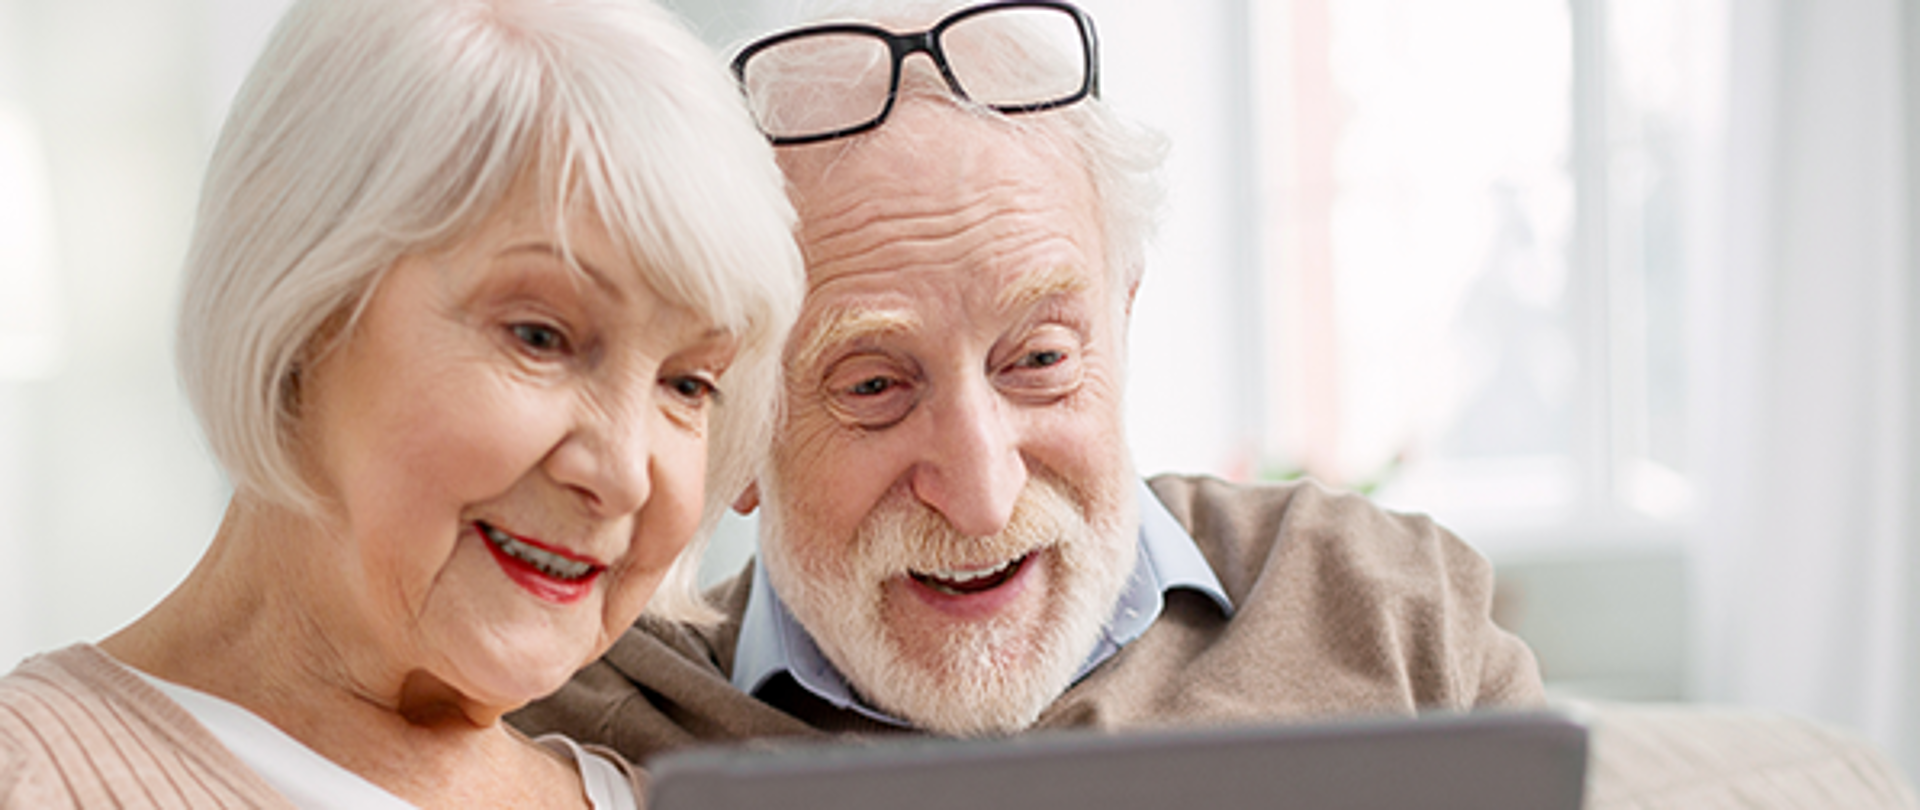 Zdjęcie przedstawia starszych, uśmiechniętych ludzi, którzy patrzą na laptopa. Kobieta mi siwe włosy oraz czerwone usta, a mężczyzna zarost i okulary na głowie. Poniżej jest napis: "21 czerwca 2023., 10:00-10:10 Okazja czy oszustwo? Sprawdź zanim podejmiesz decyzję inwestycyjną." a po prawej: "Webinarium skierowane jest do seniorów. Rejestracja na webinarium CEDUR odbywa się online. Na górze znajdują się logo: Pomagamy i chronimy POLICJA i Urzędu Komisji Nadzoru Finansowego".